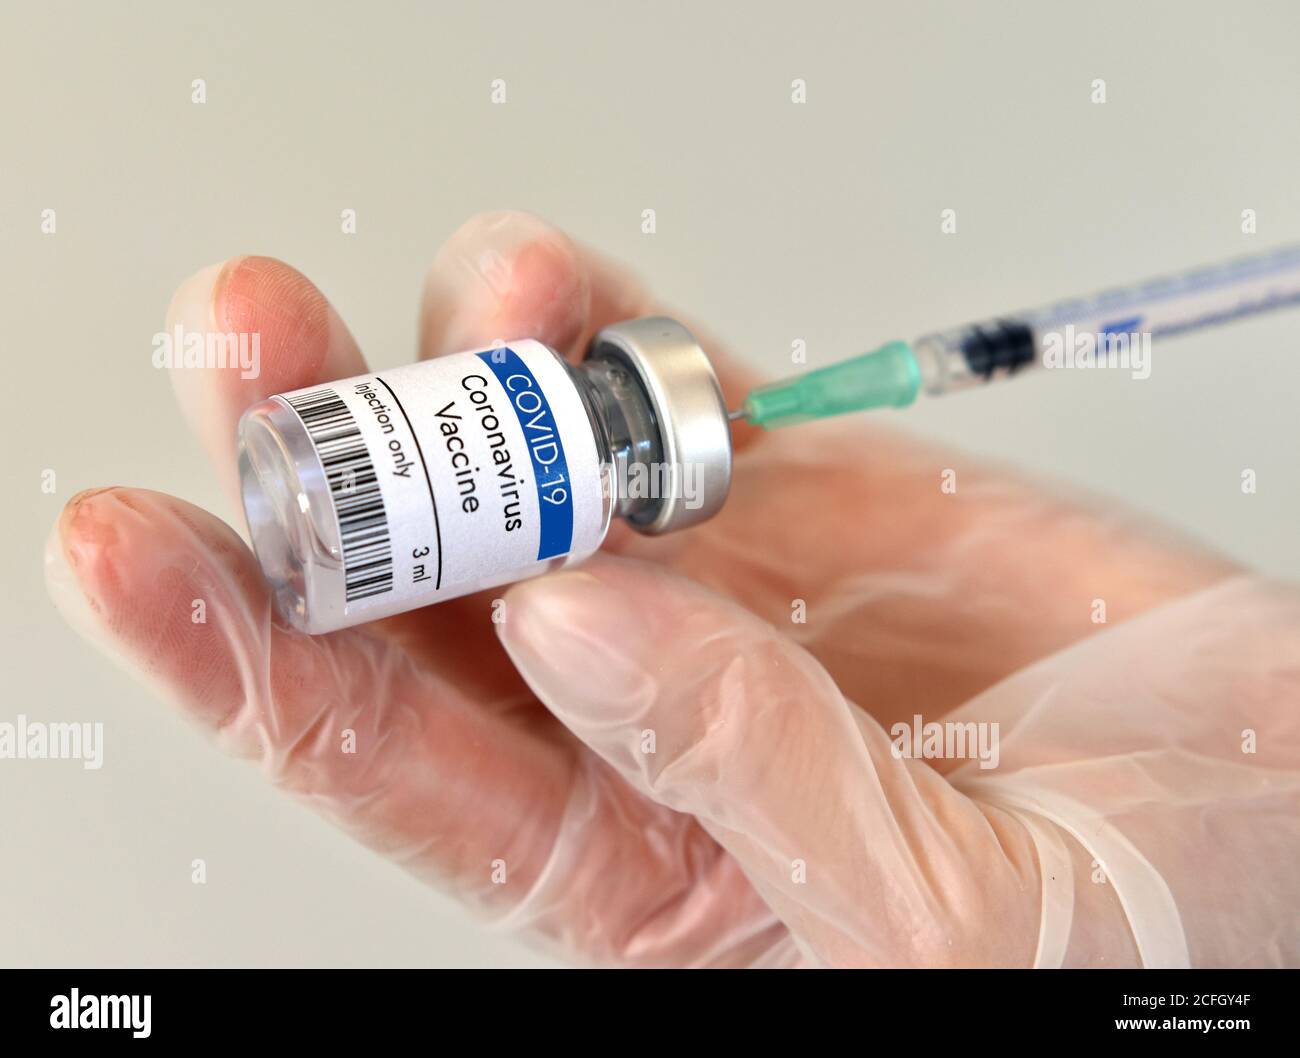 Coronavirus vaccine vial container in hand on white background. Close-up view. Coronavirus vaccine bottle. Stock Photo